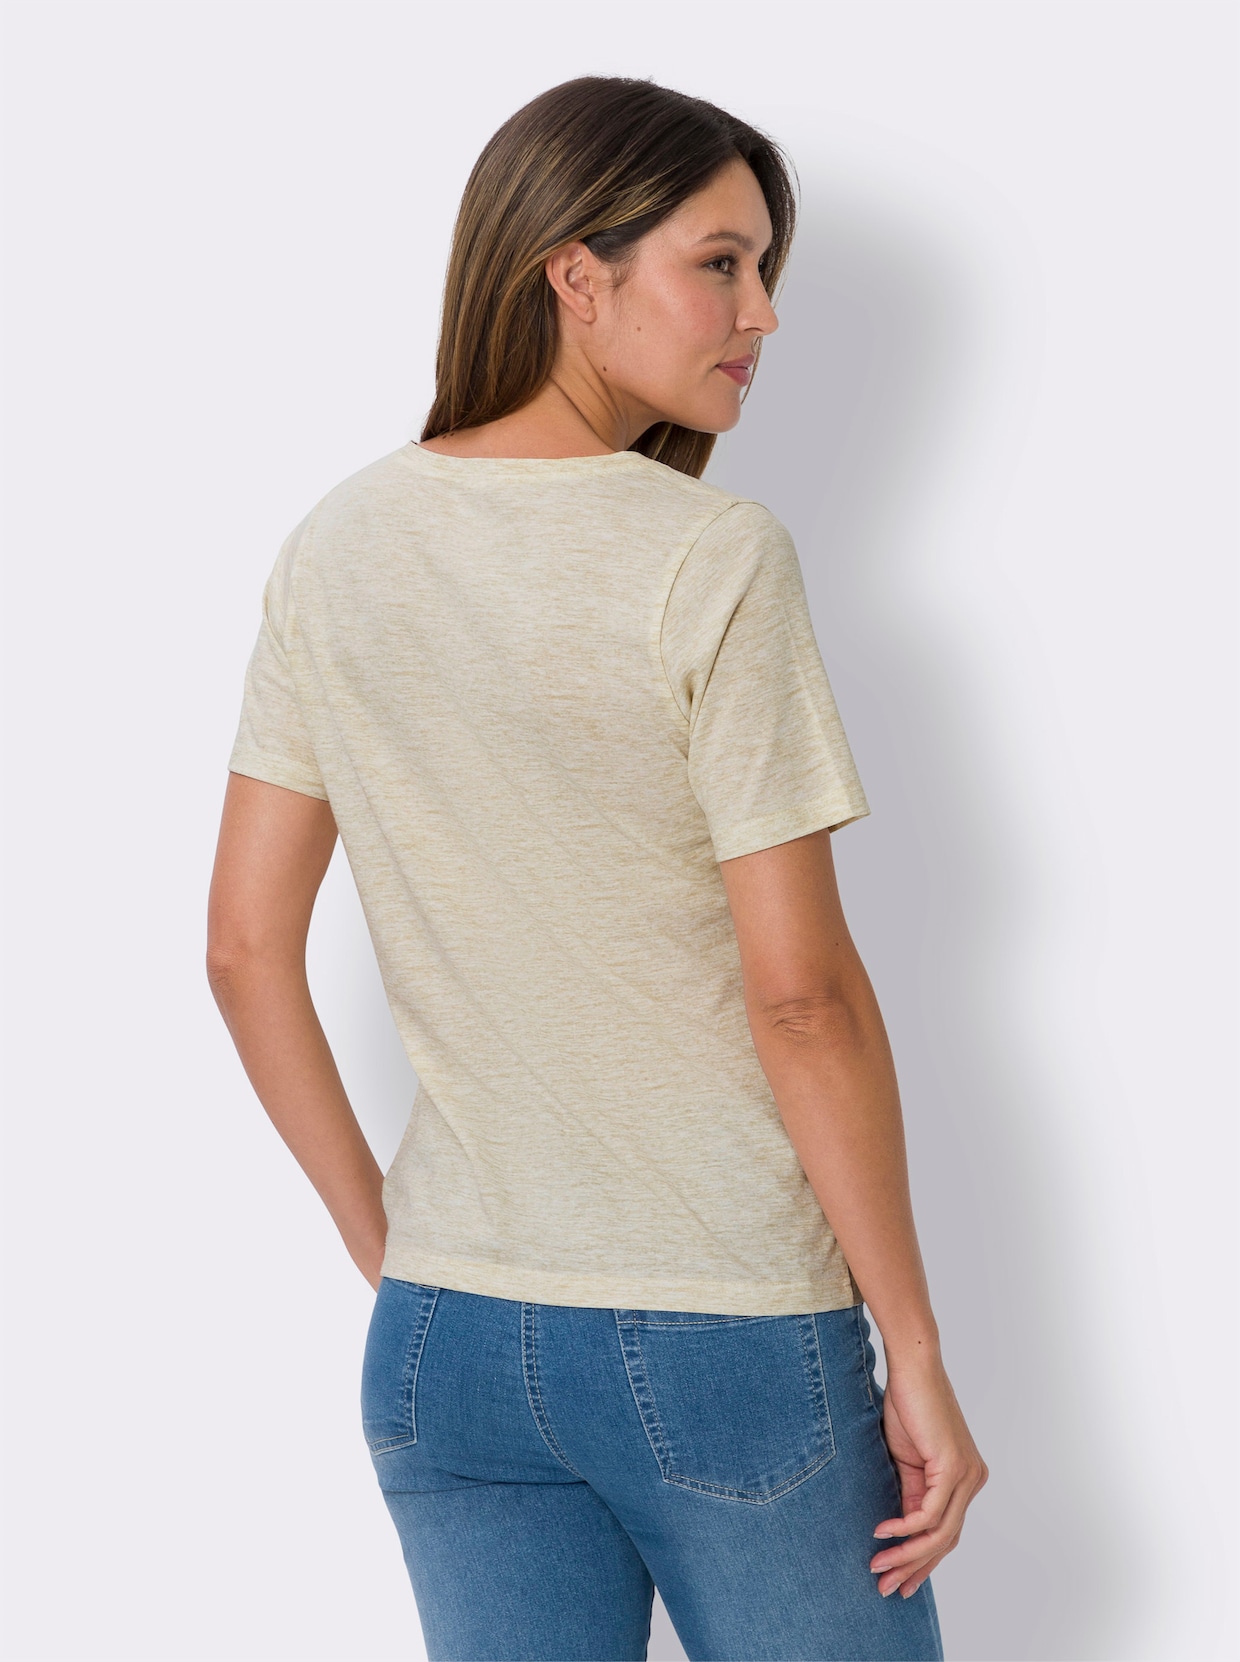 Tričko s krátkým rukávem - písková-melír